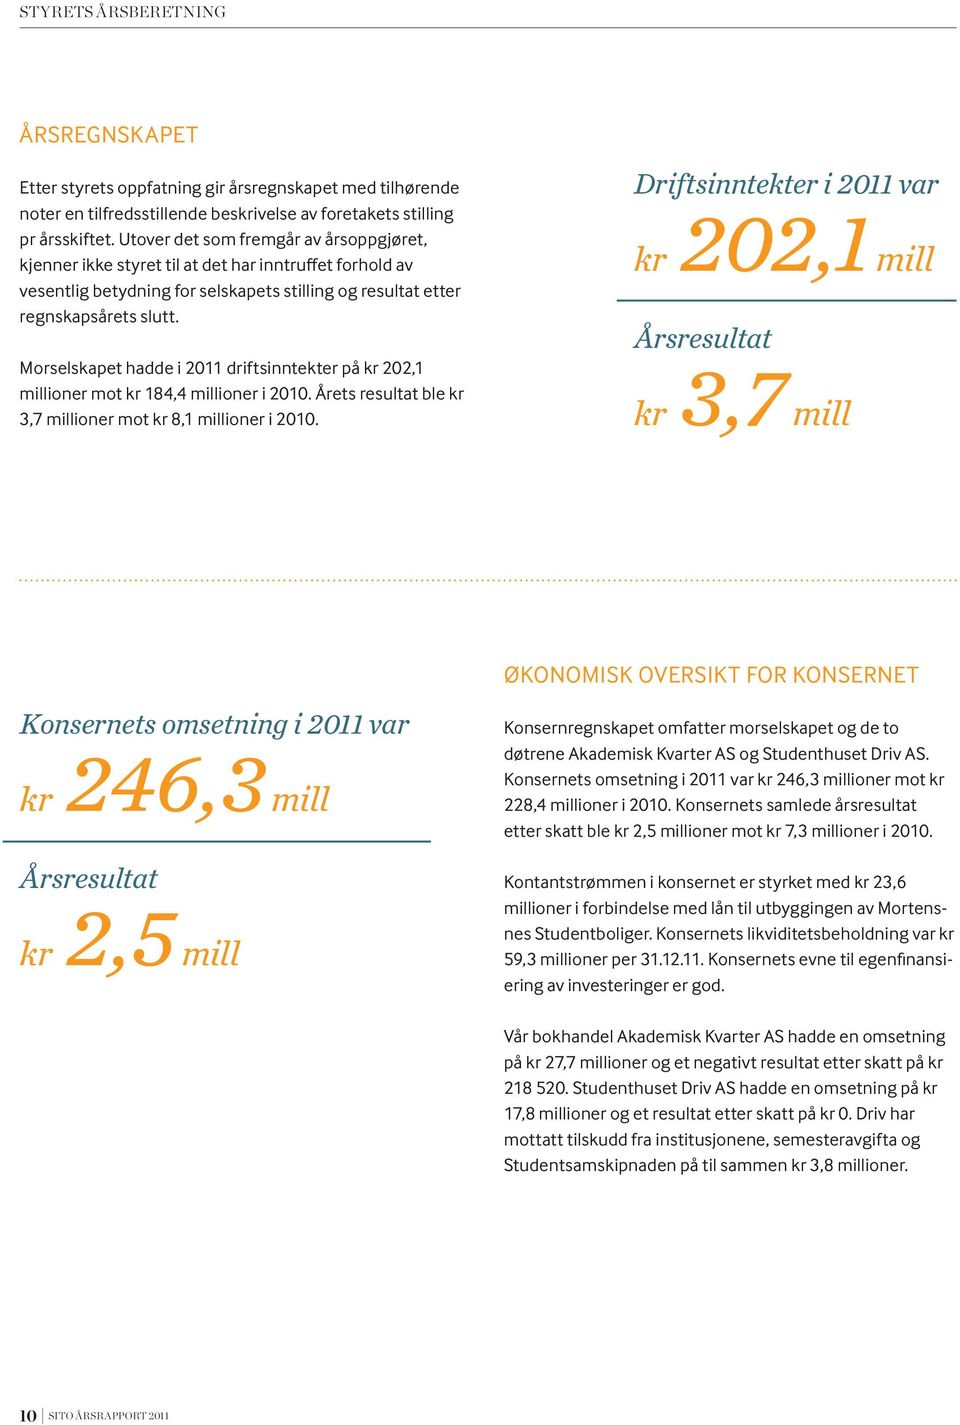 Morselskapet hadde i 2011 driftsinntekter på kr 202,1 millioner mot kr 184,4 millioner i 2010. Årets resultat ble kr 3,7 millioner mot kr 8,1 millioner i 2010.